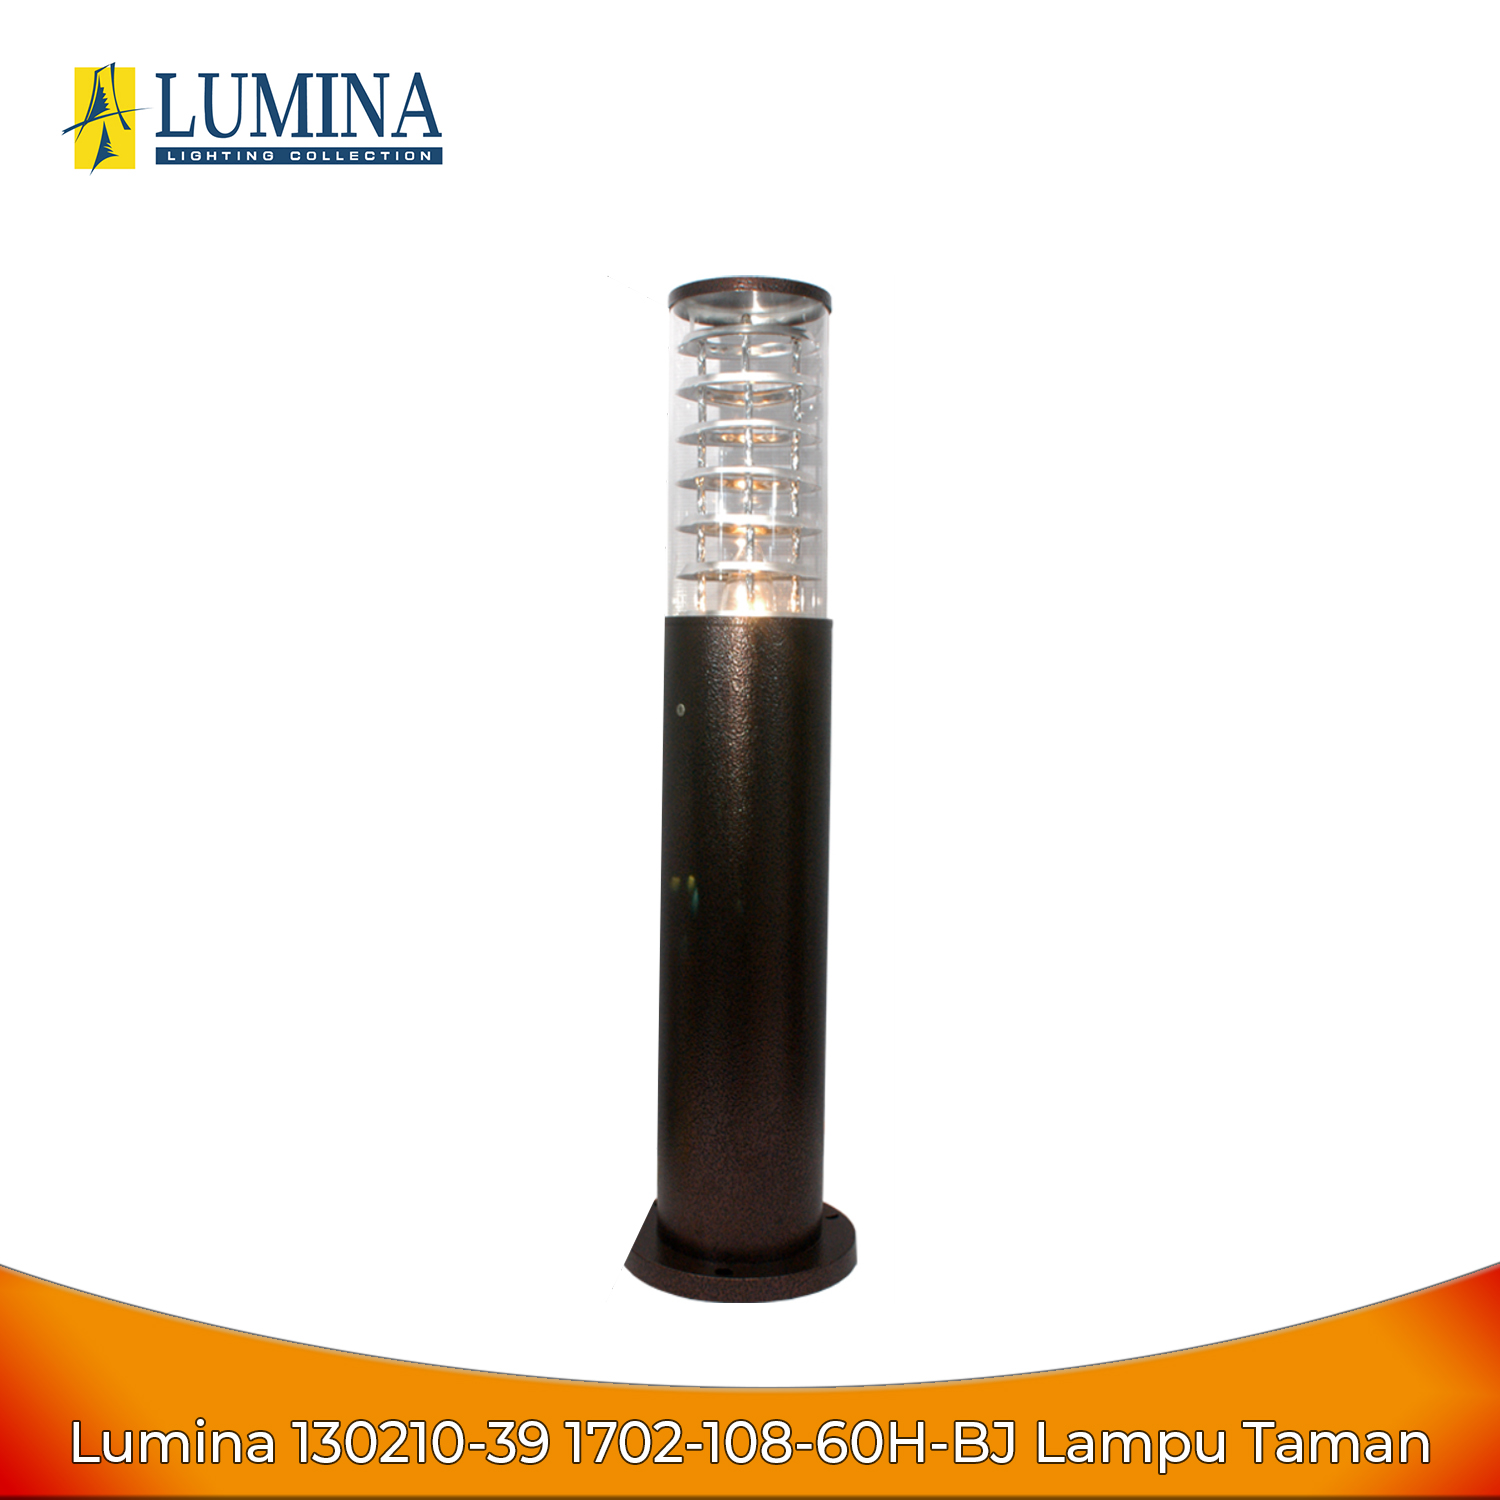 Lumina 1702-108-60H-BJ Lampu Taman - Garden Lamp